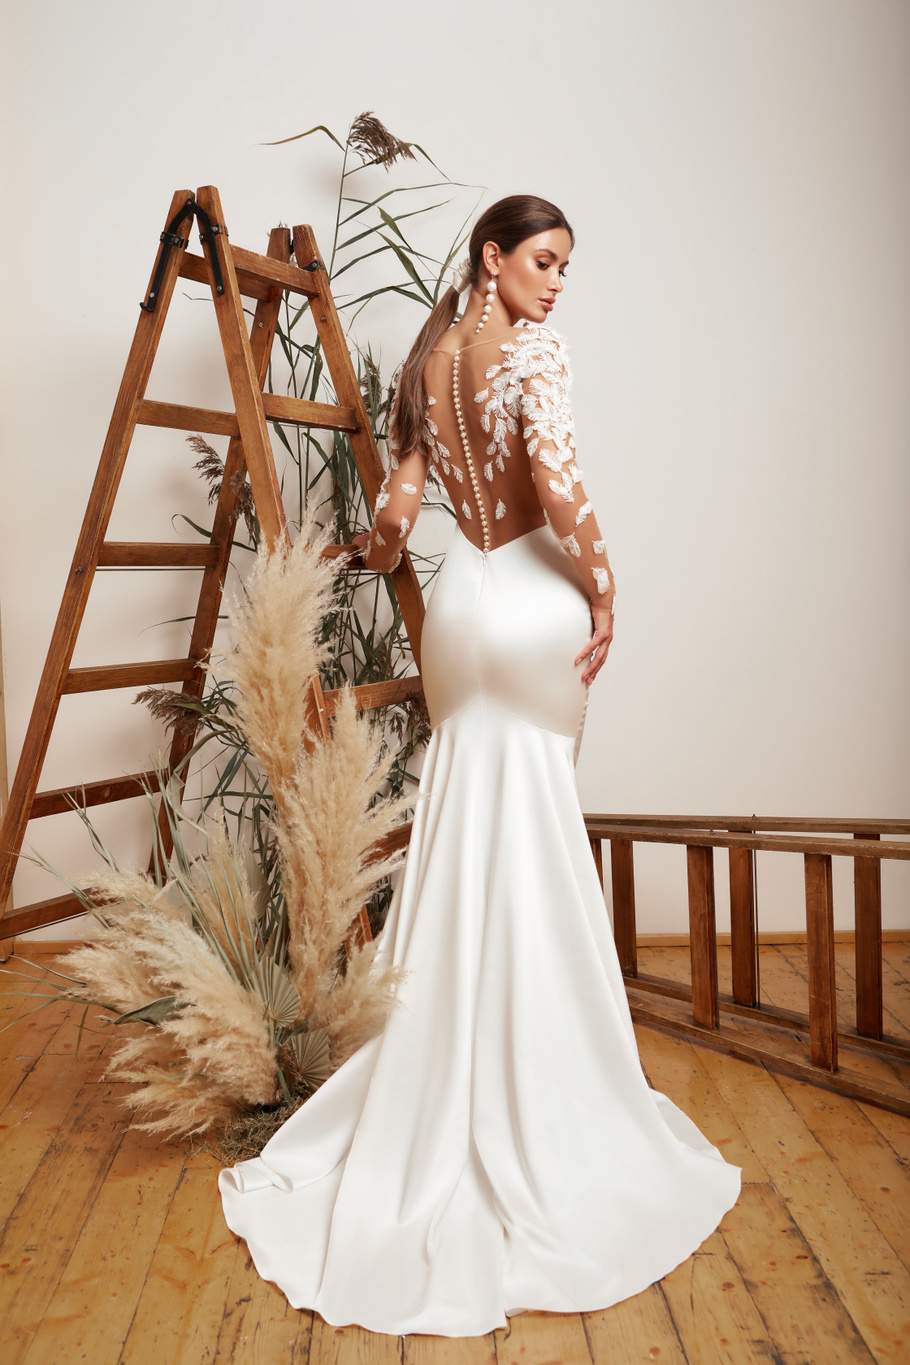 Купить свадебное платье «Юдит» Мэрри Марк из коллекции 2020 года в Екатеринбурге